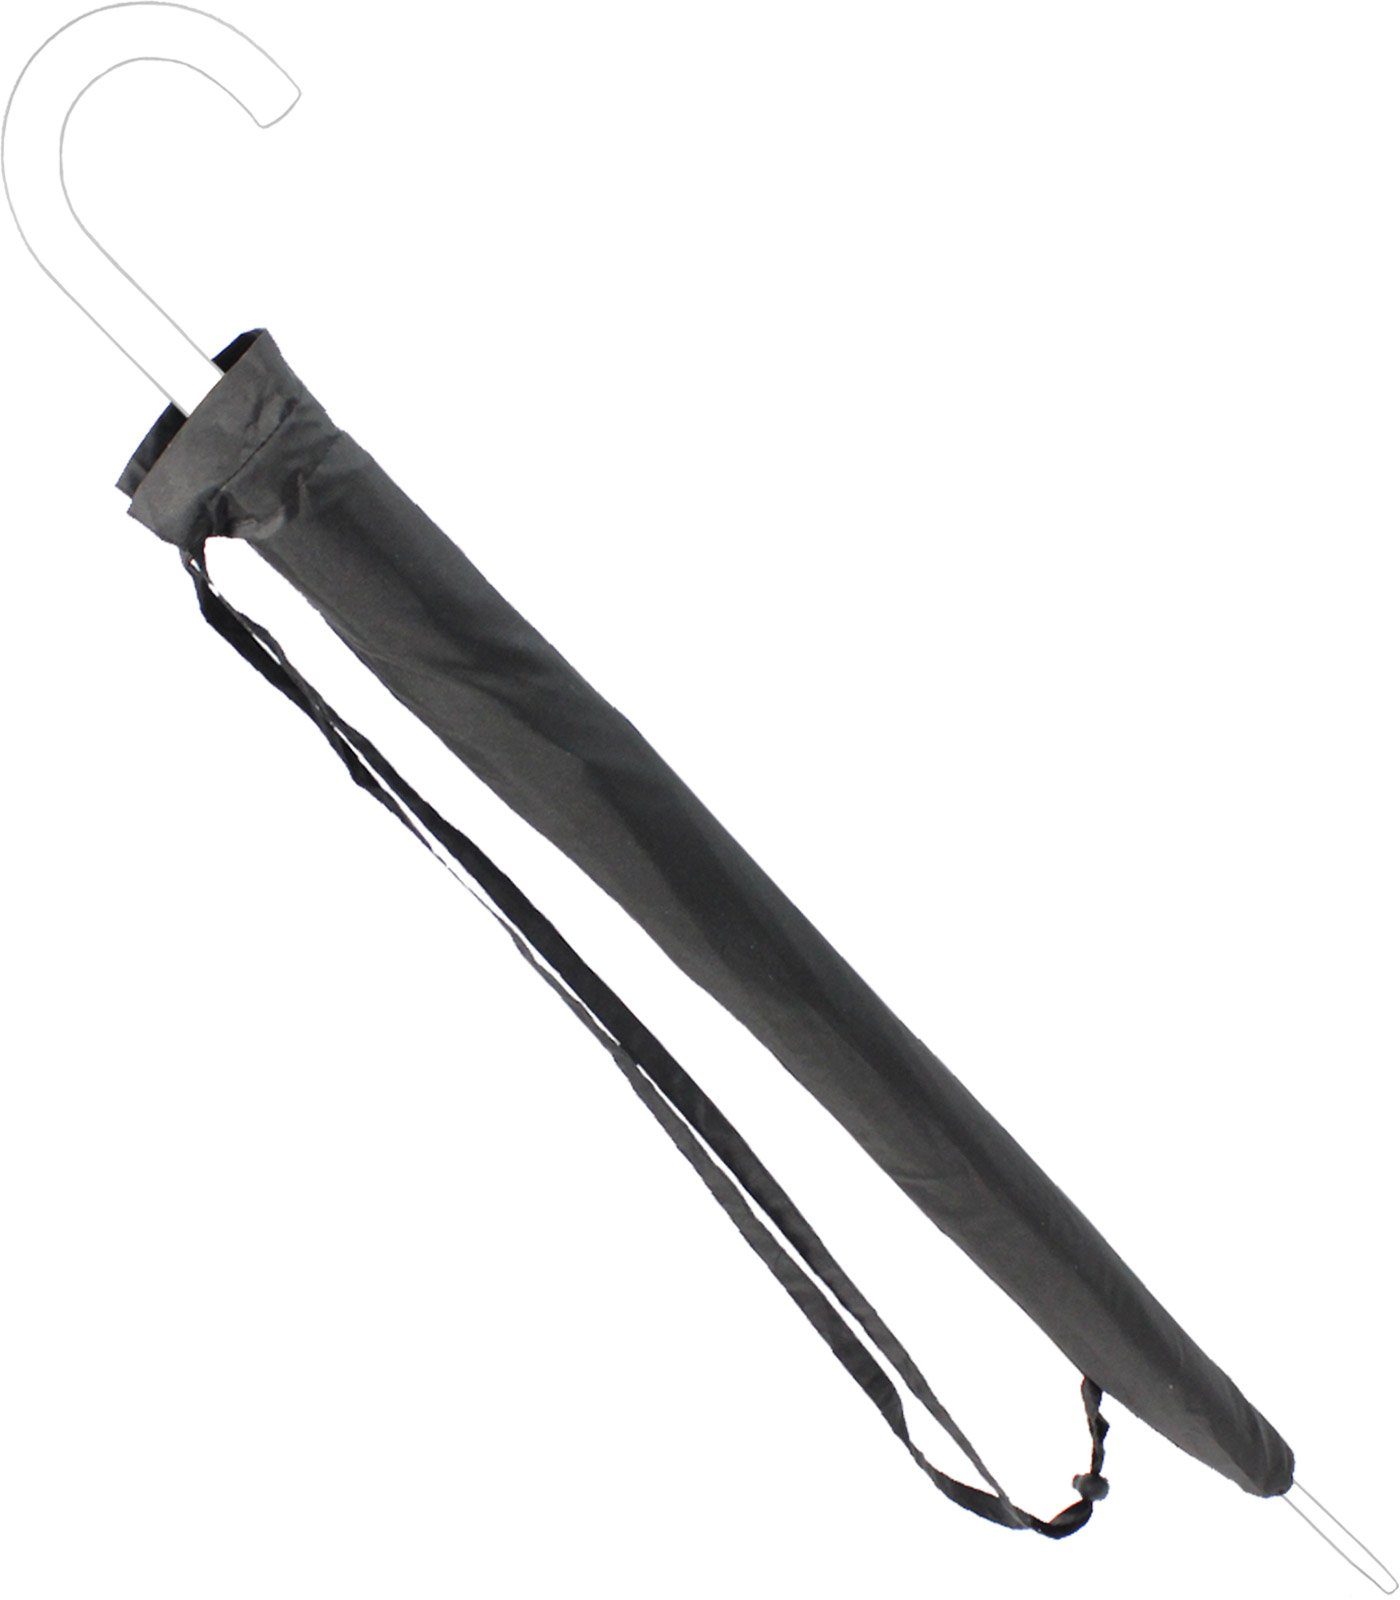 zum Regenschirm-Hülle Schutzhülle Langregenschirm iX-brella schwarz-Gr.L Umhängen, umhängbar -